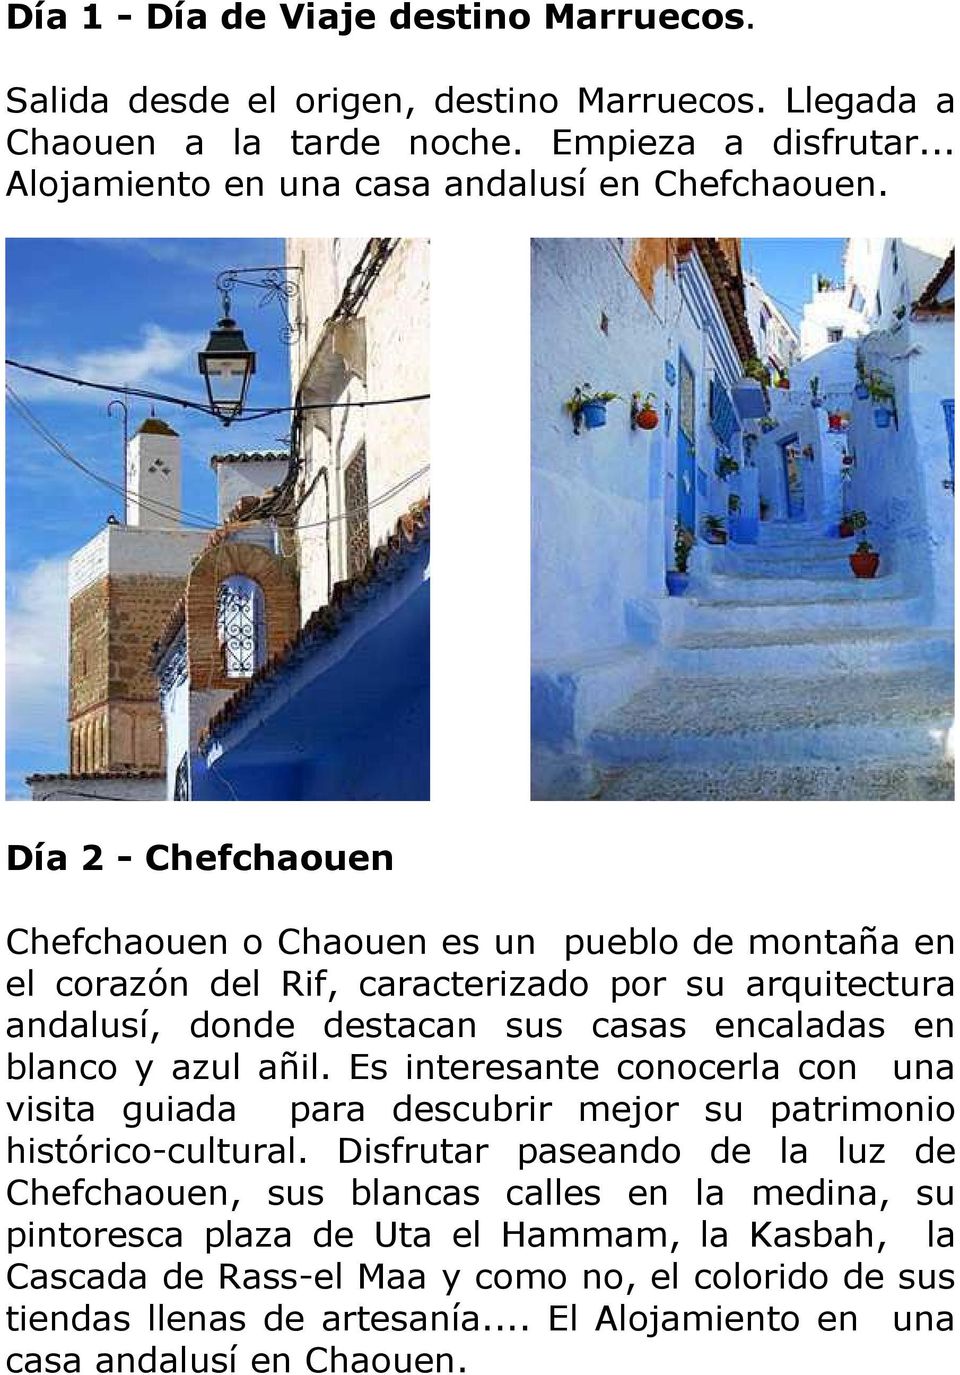 Día 2 - Chefchaouen Chefchaouen o Chaouen es un pueblo de montaña en el corazón del Rif, caracterizado por su arquitectura andalusí, donde destacan sus casas encaladas en blanco y azul